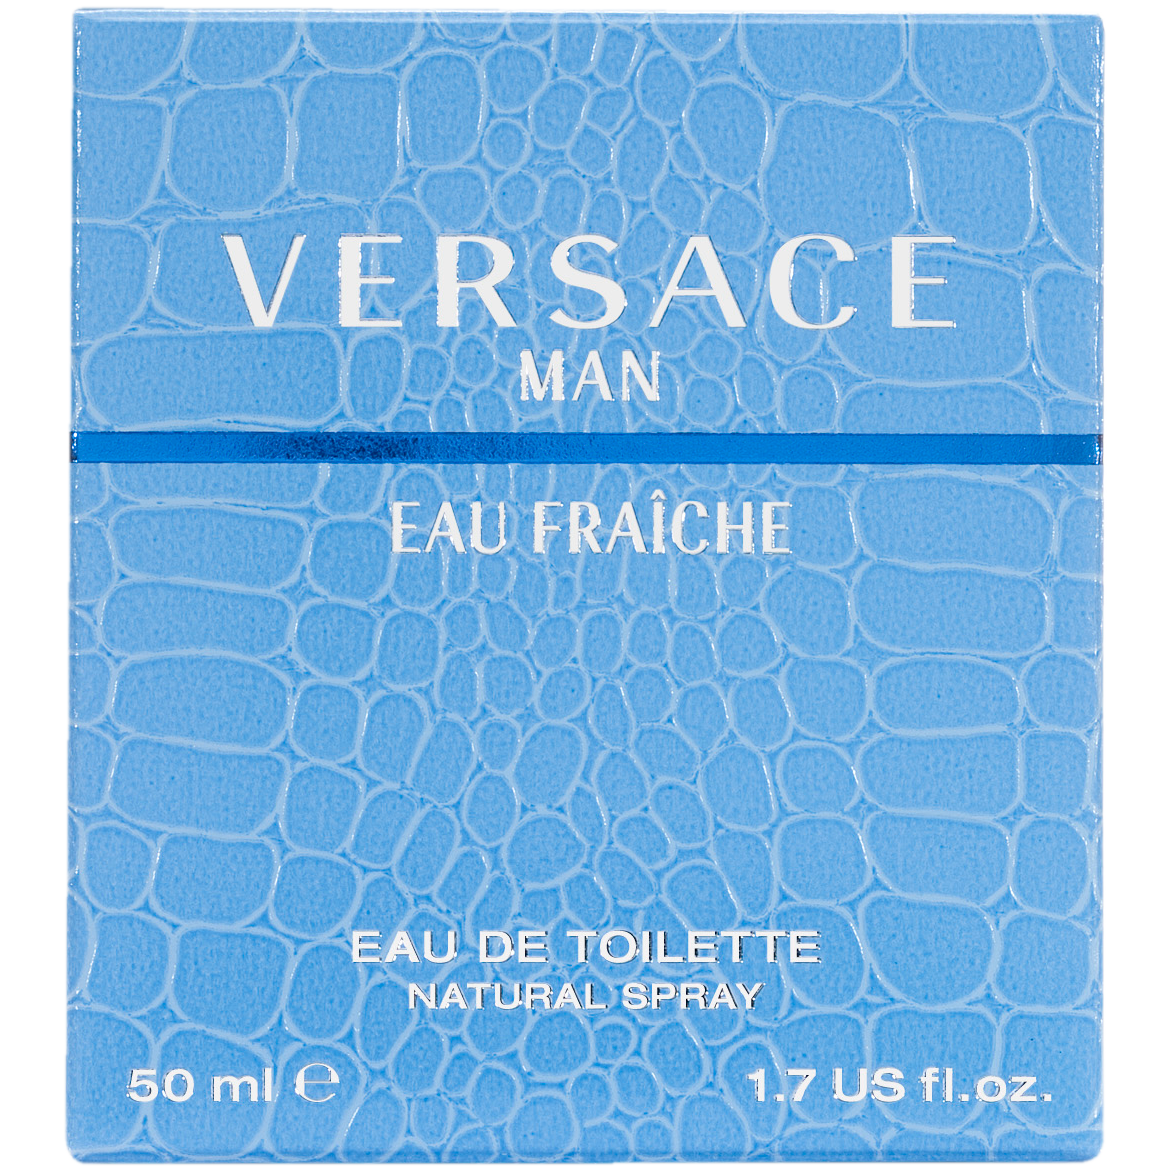 Мужская туалетная вода Versace Eau Fraiche, 50 мл туалетная вода versace eau fraiche 30 мл